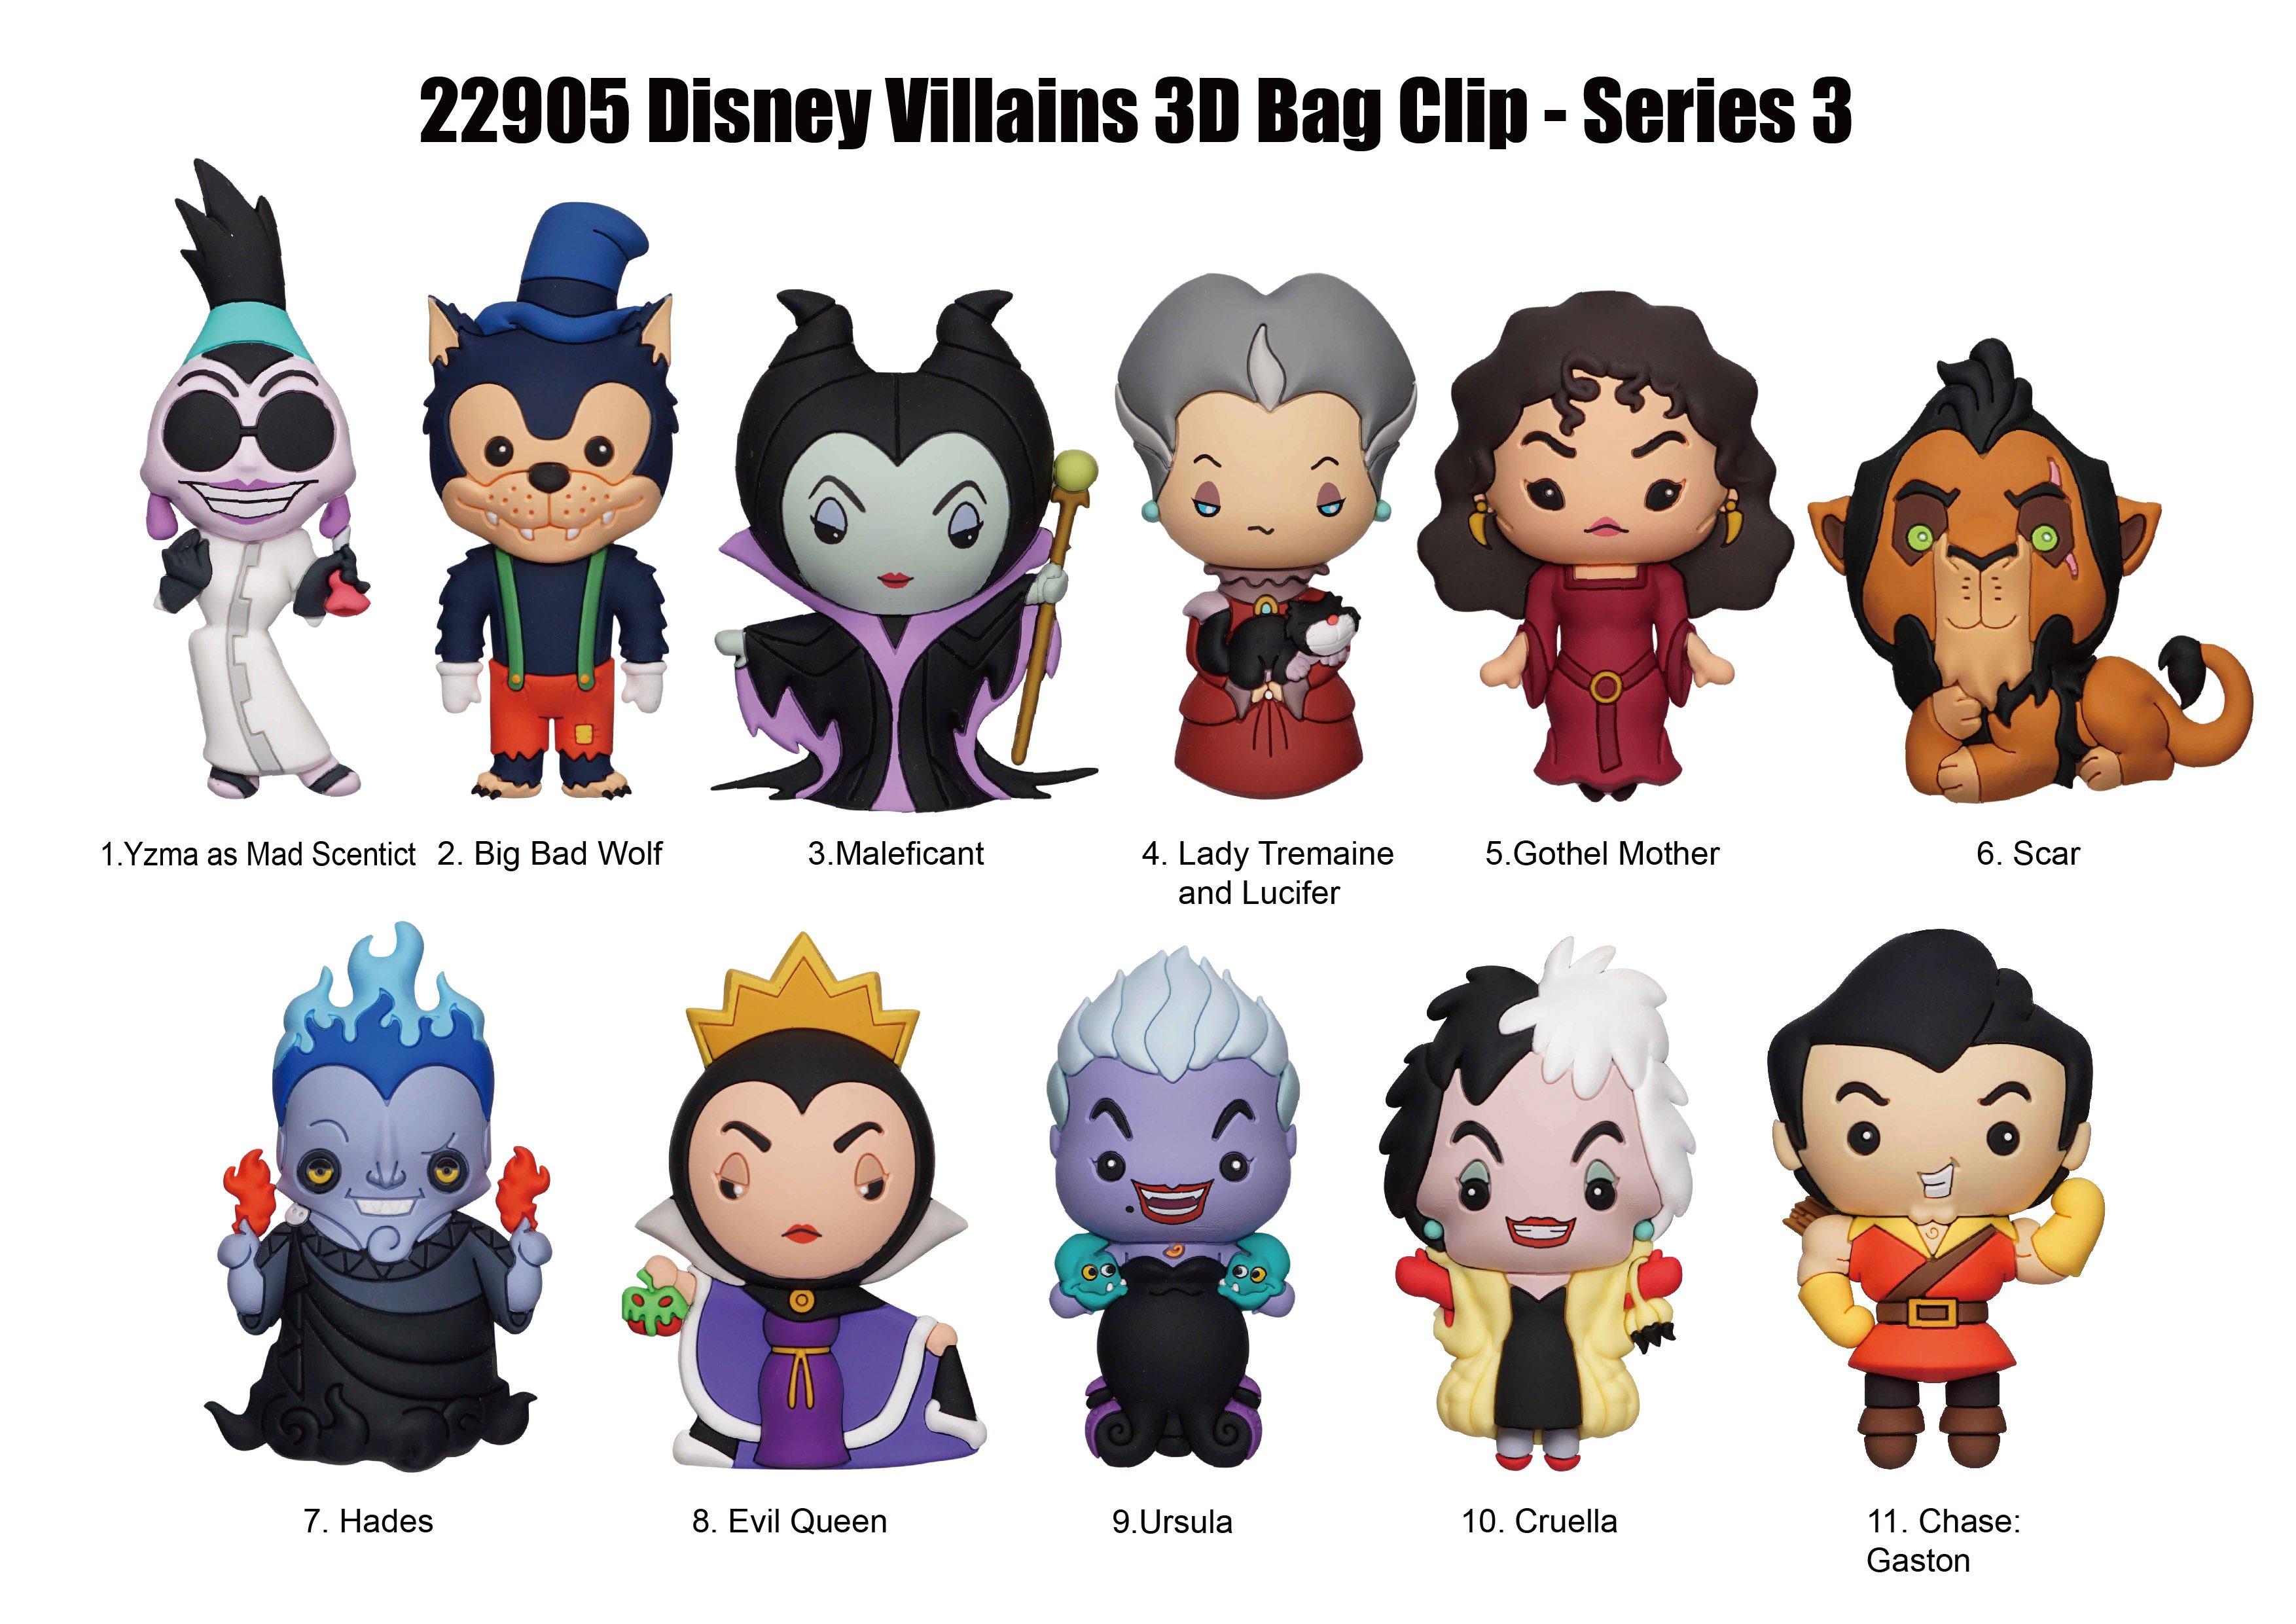 https://media.gamestop.com/i/gamestop/11167223_ALT01/Disney-Villains-Series-3-3D-Foam-Bag-Clip-Blind-Bag?$pdp$